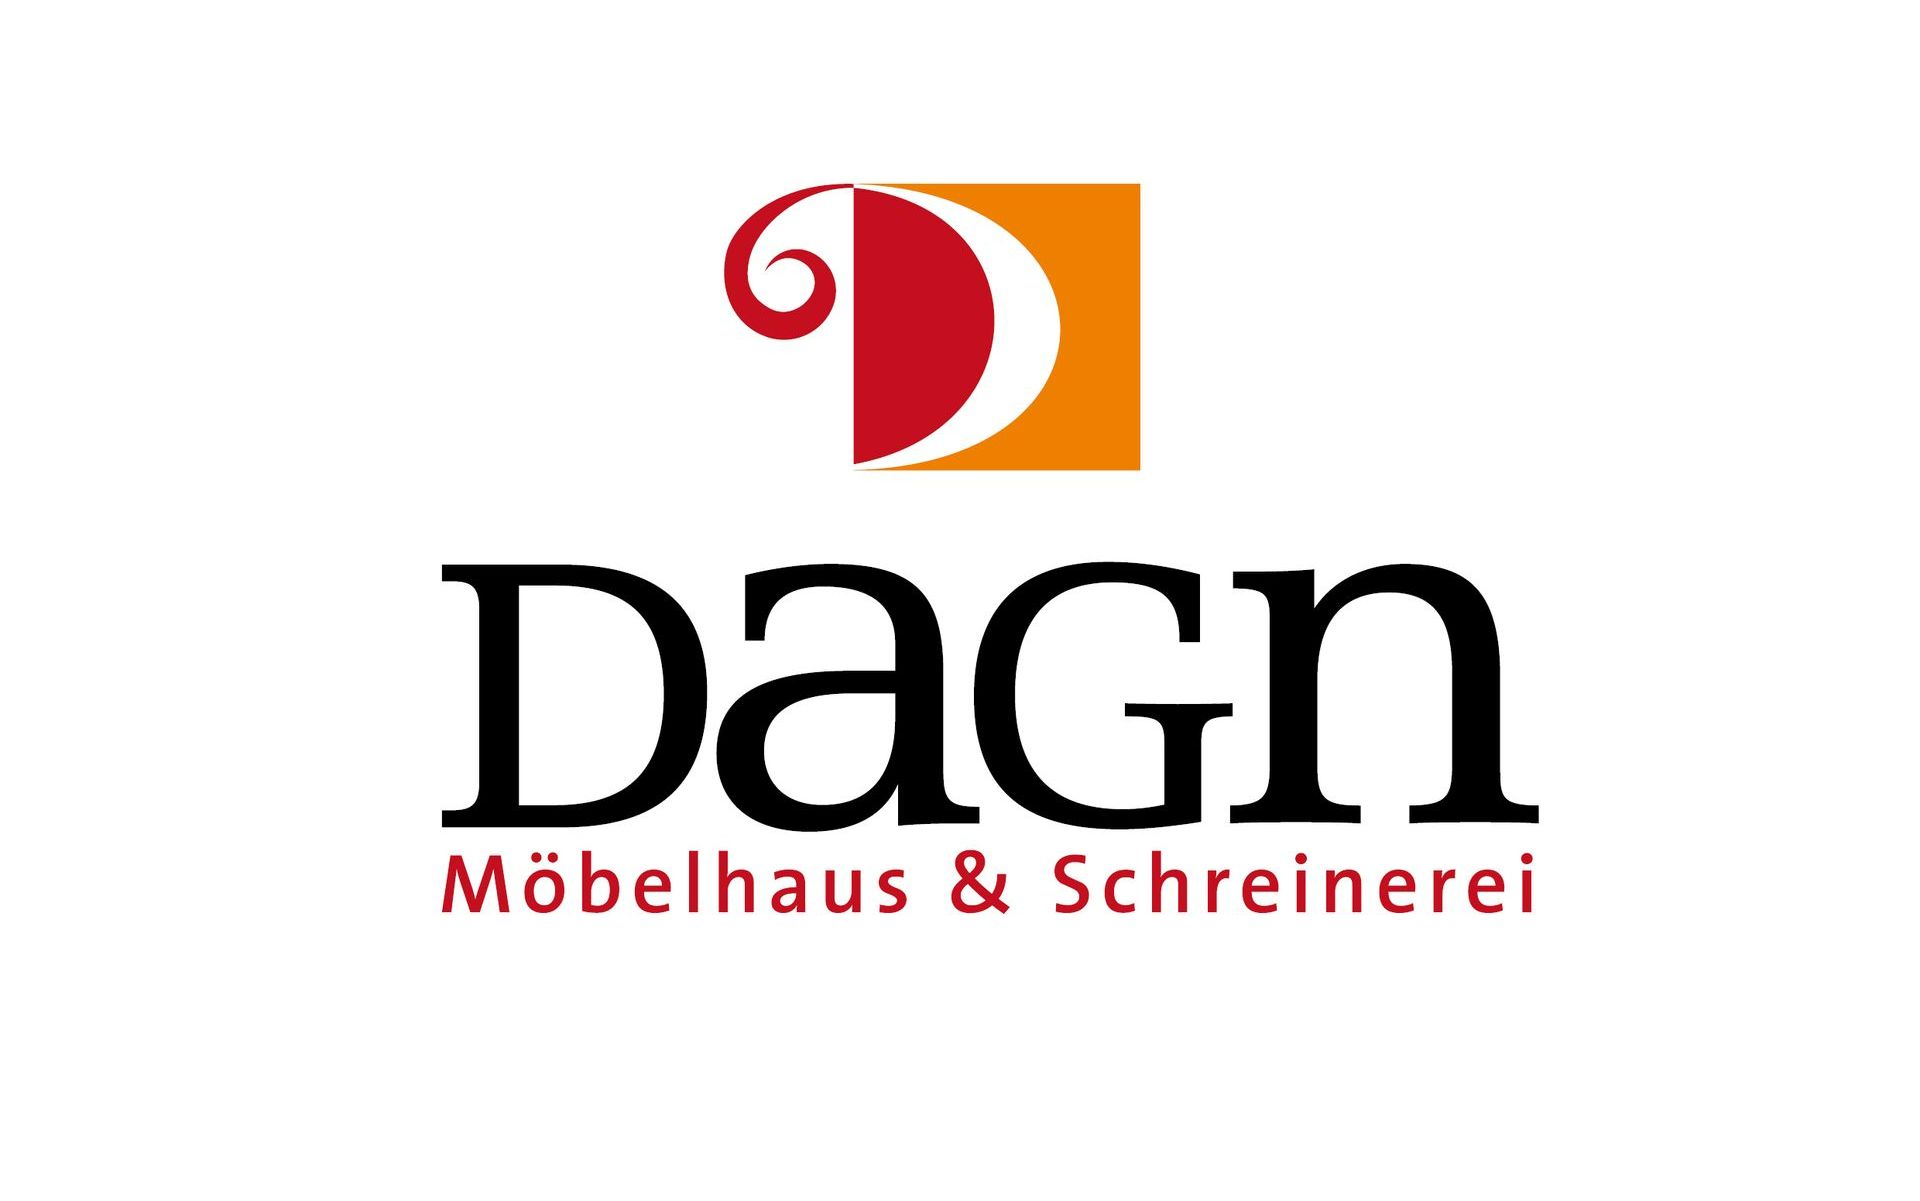 Möbel Dagn GmbH & Co. KG